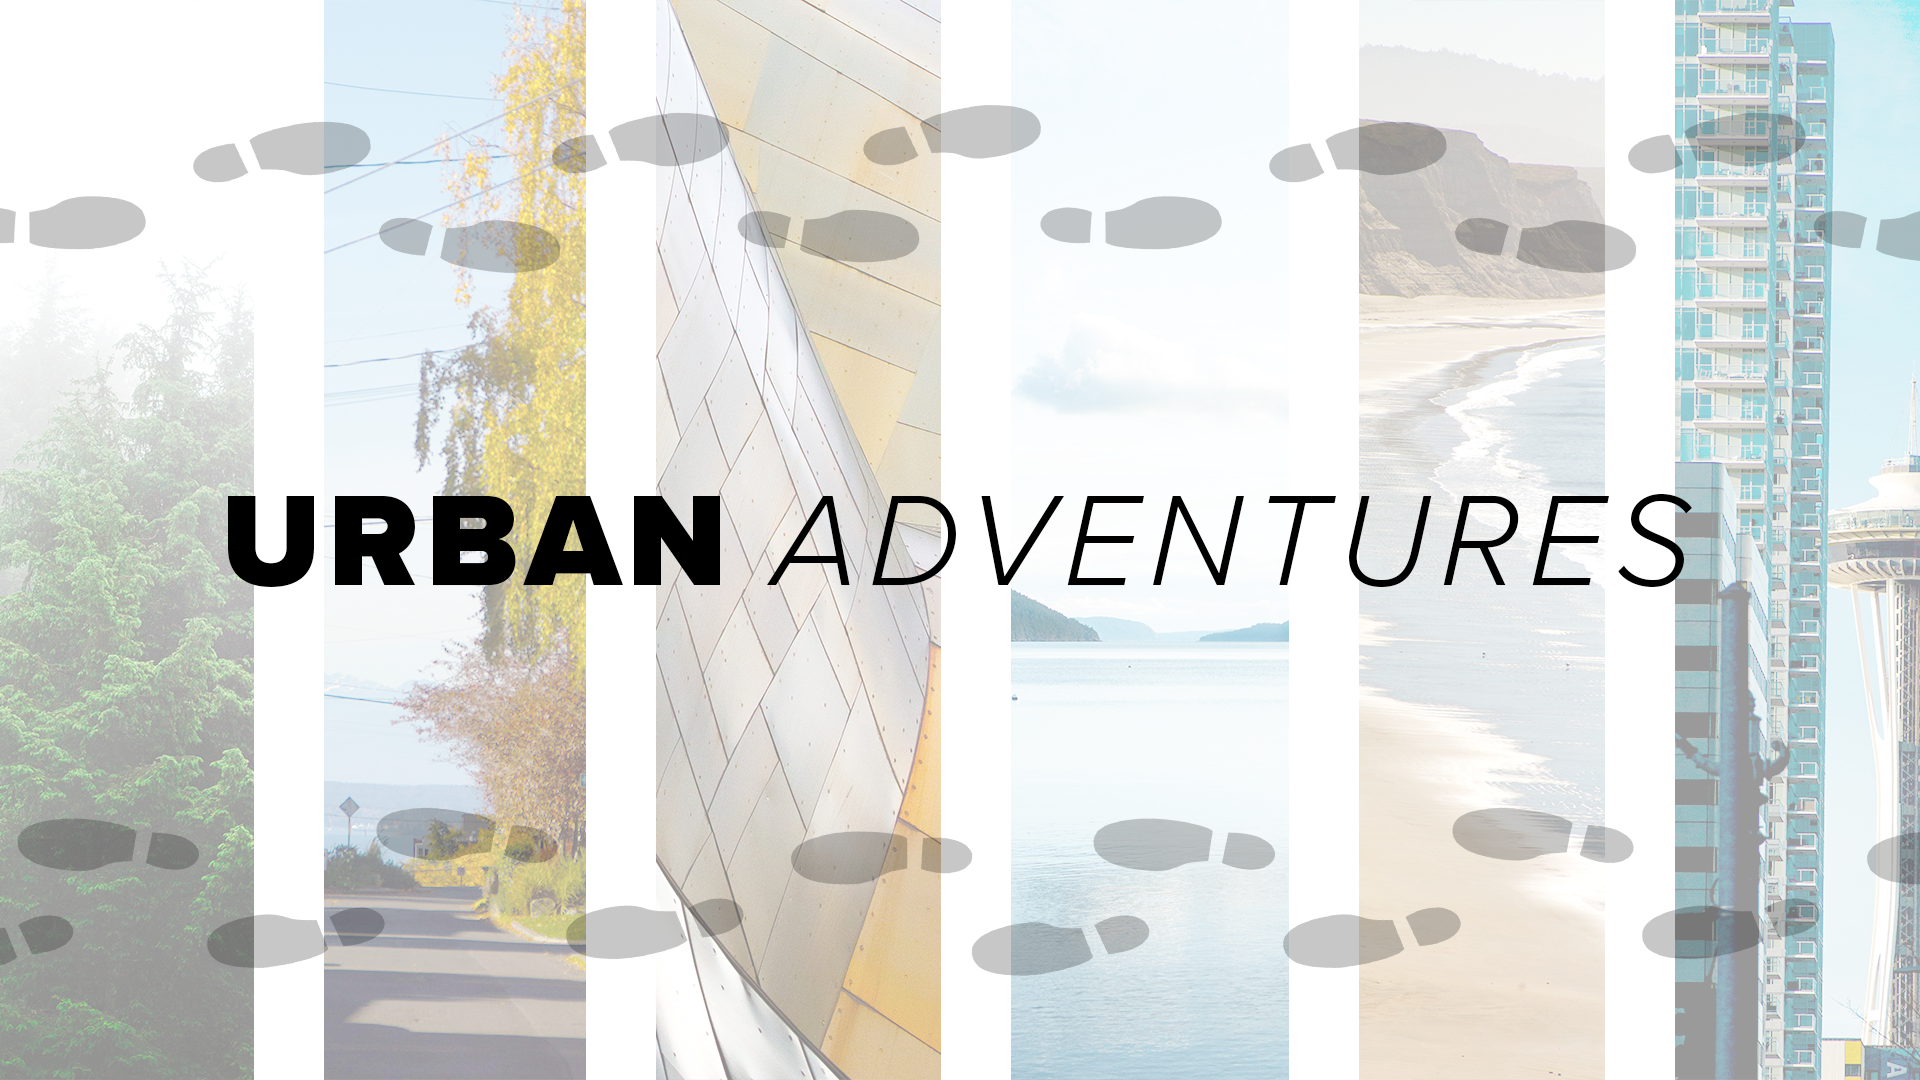 Urban Adventures